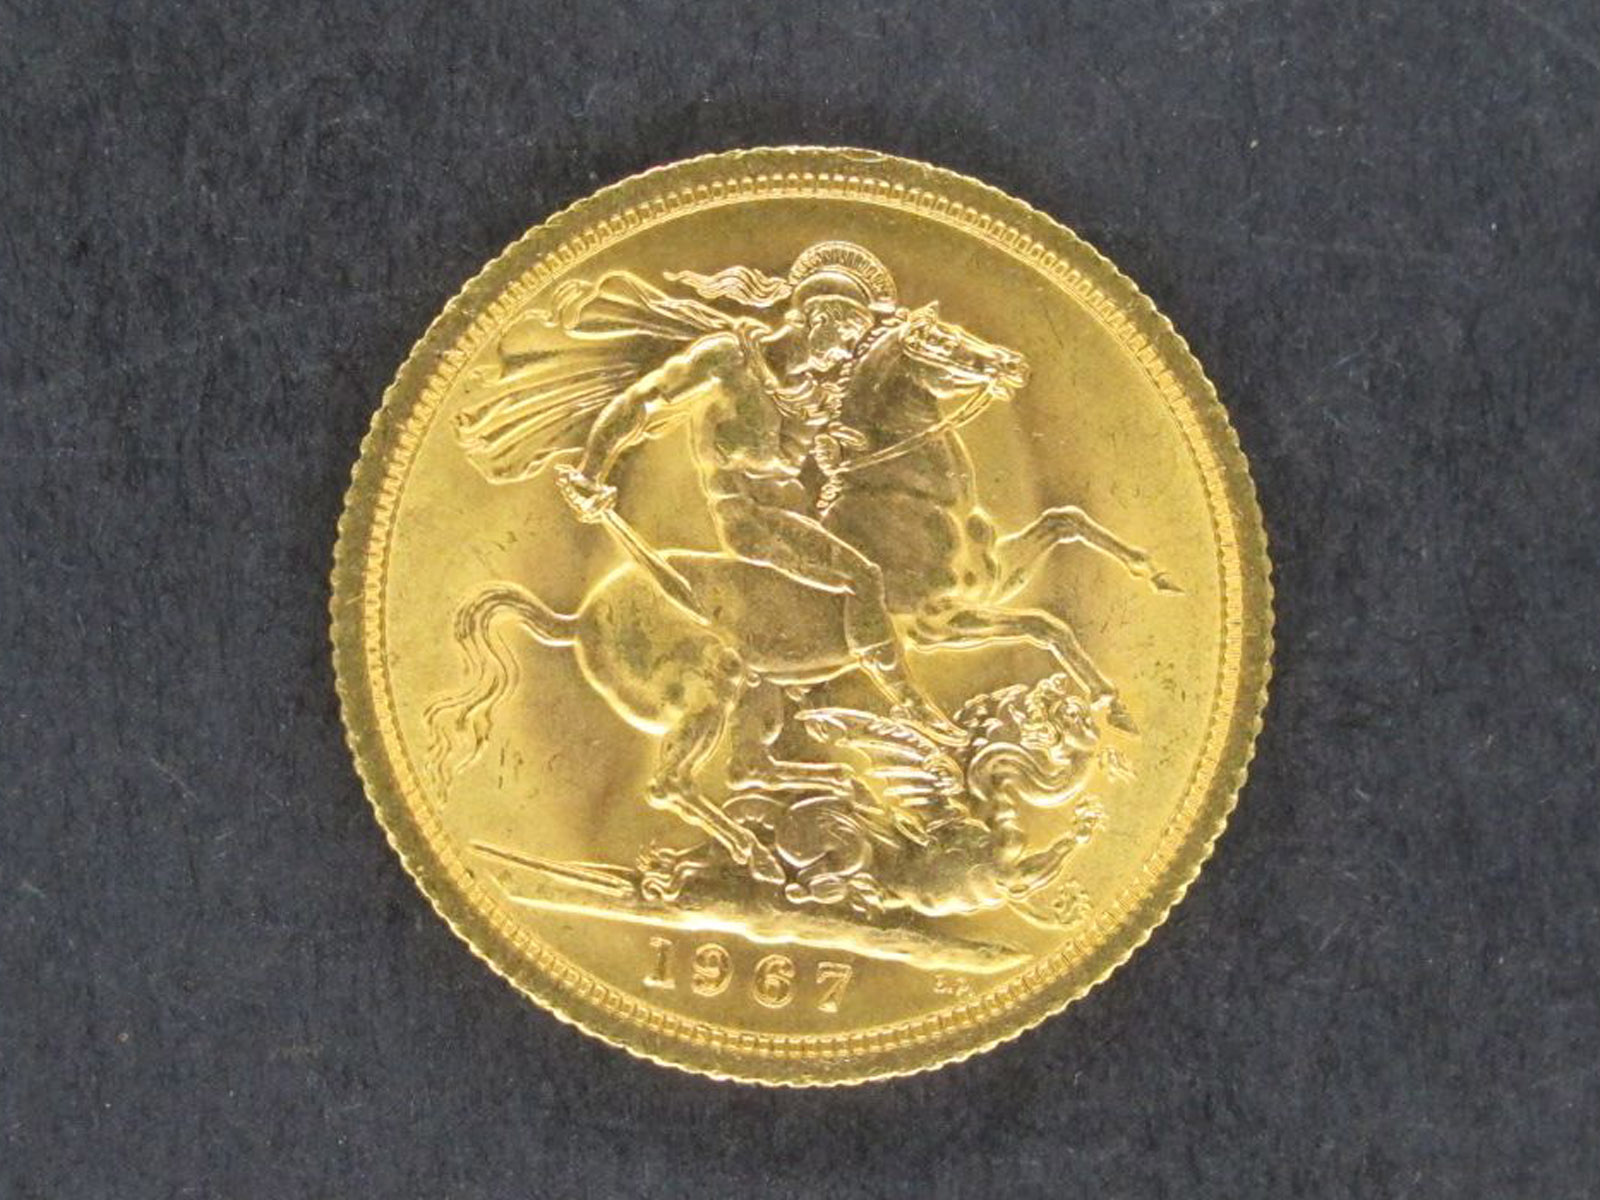 A 1967 QEII Sovereign.